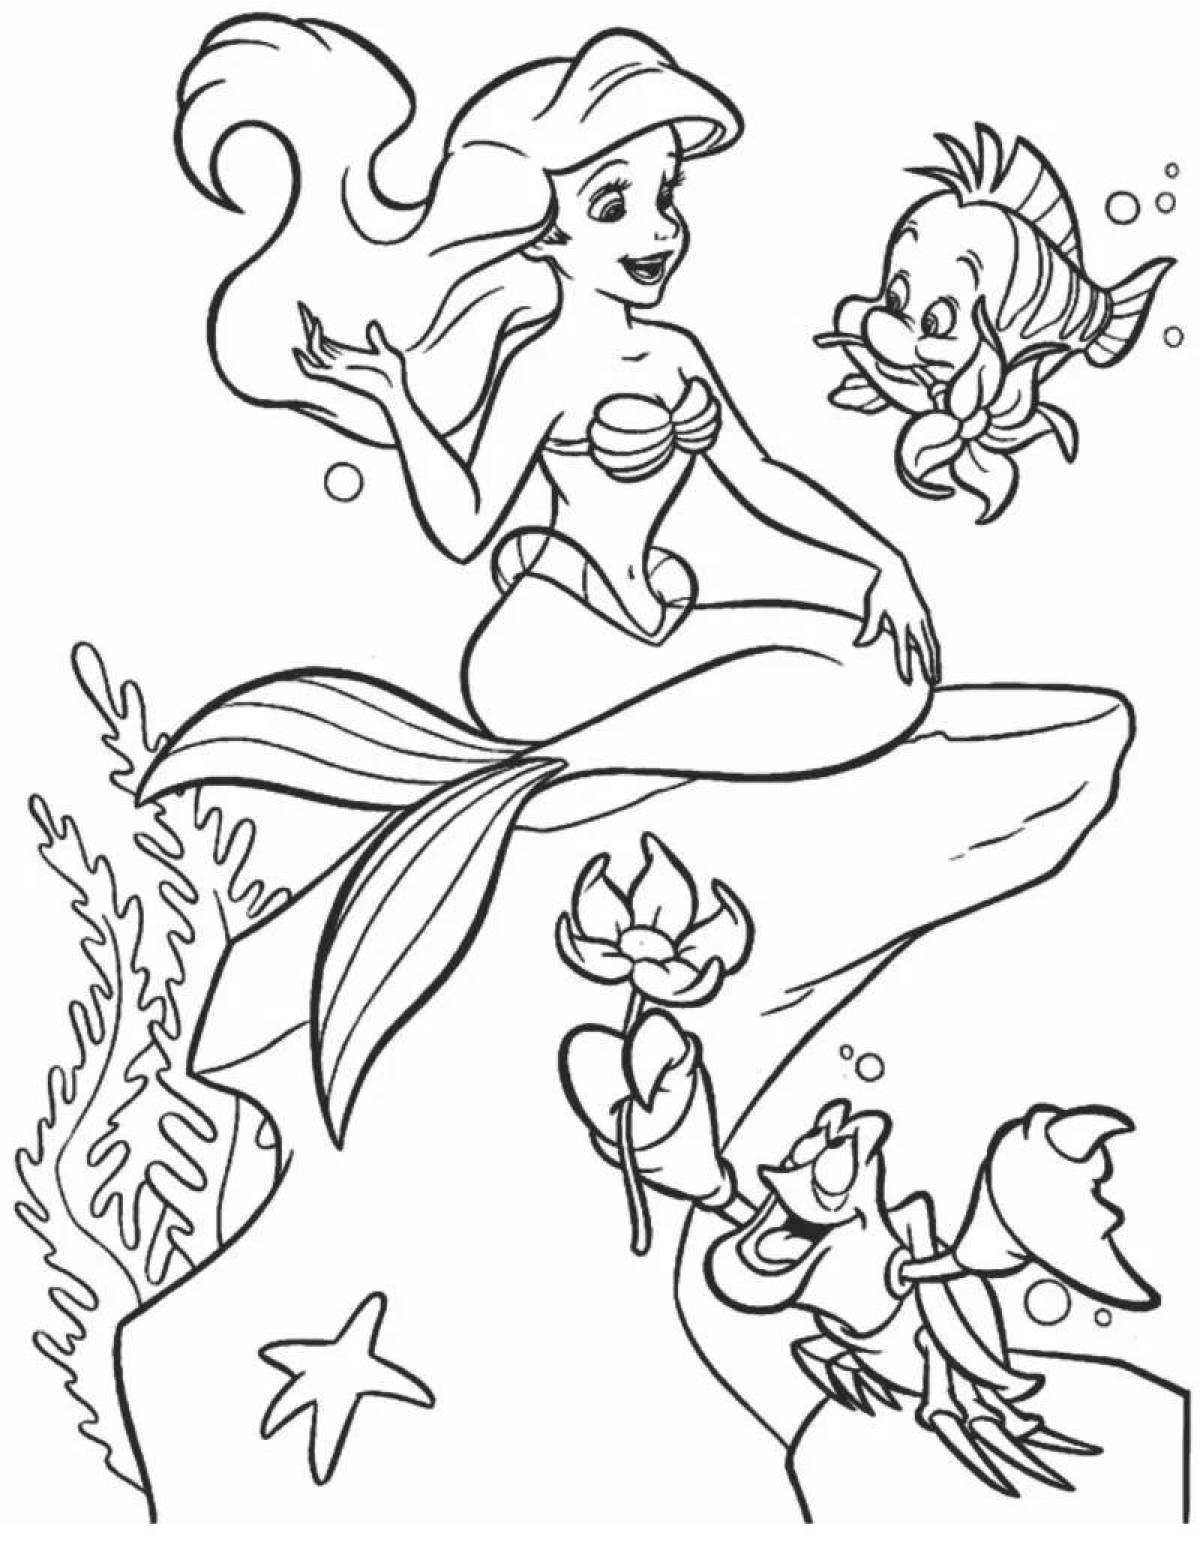 Magic coloring mermaid for kids